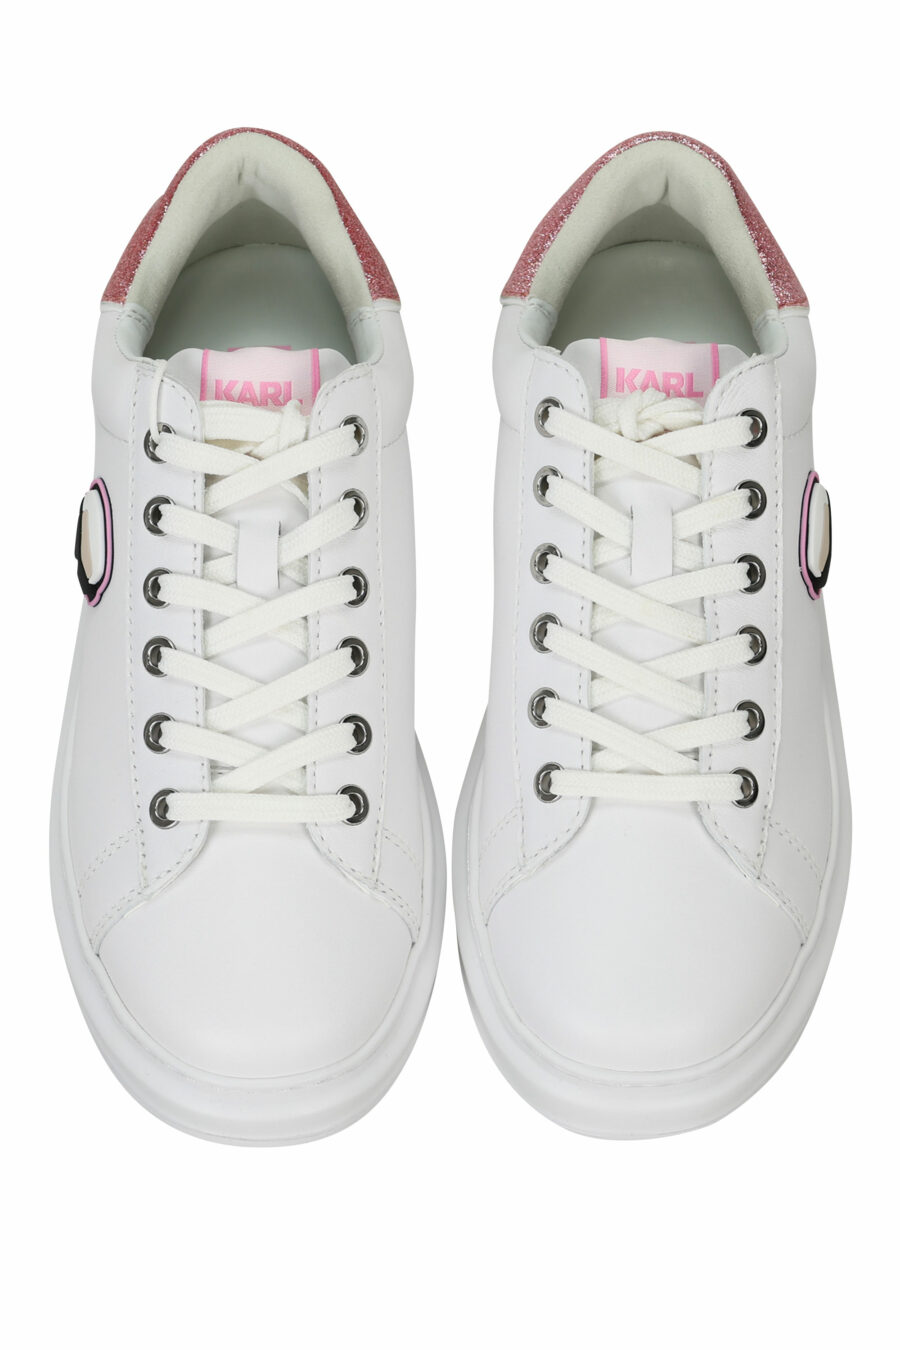 Zapatillas blancas "Kapri" con logo en goma y detalle rosa - 5059529351099 4